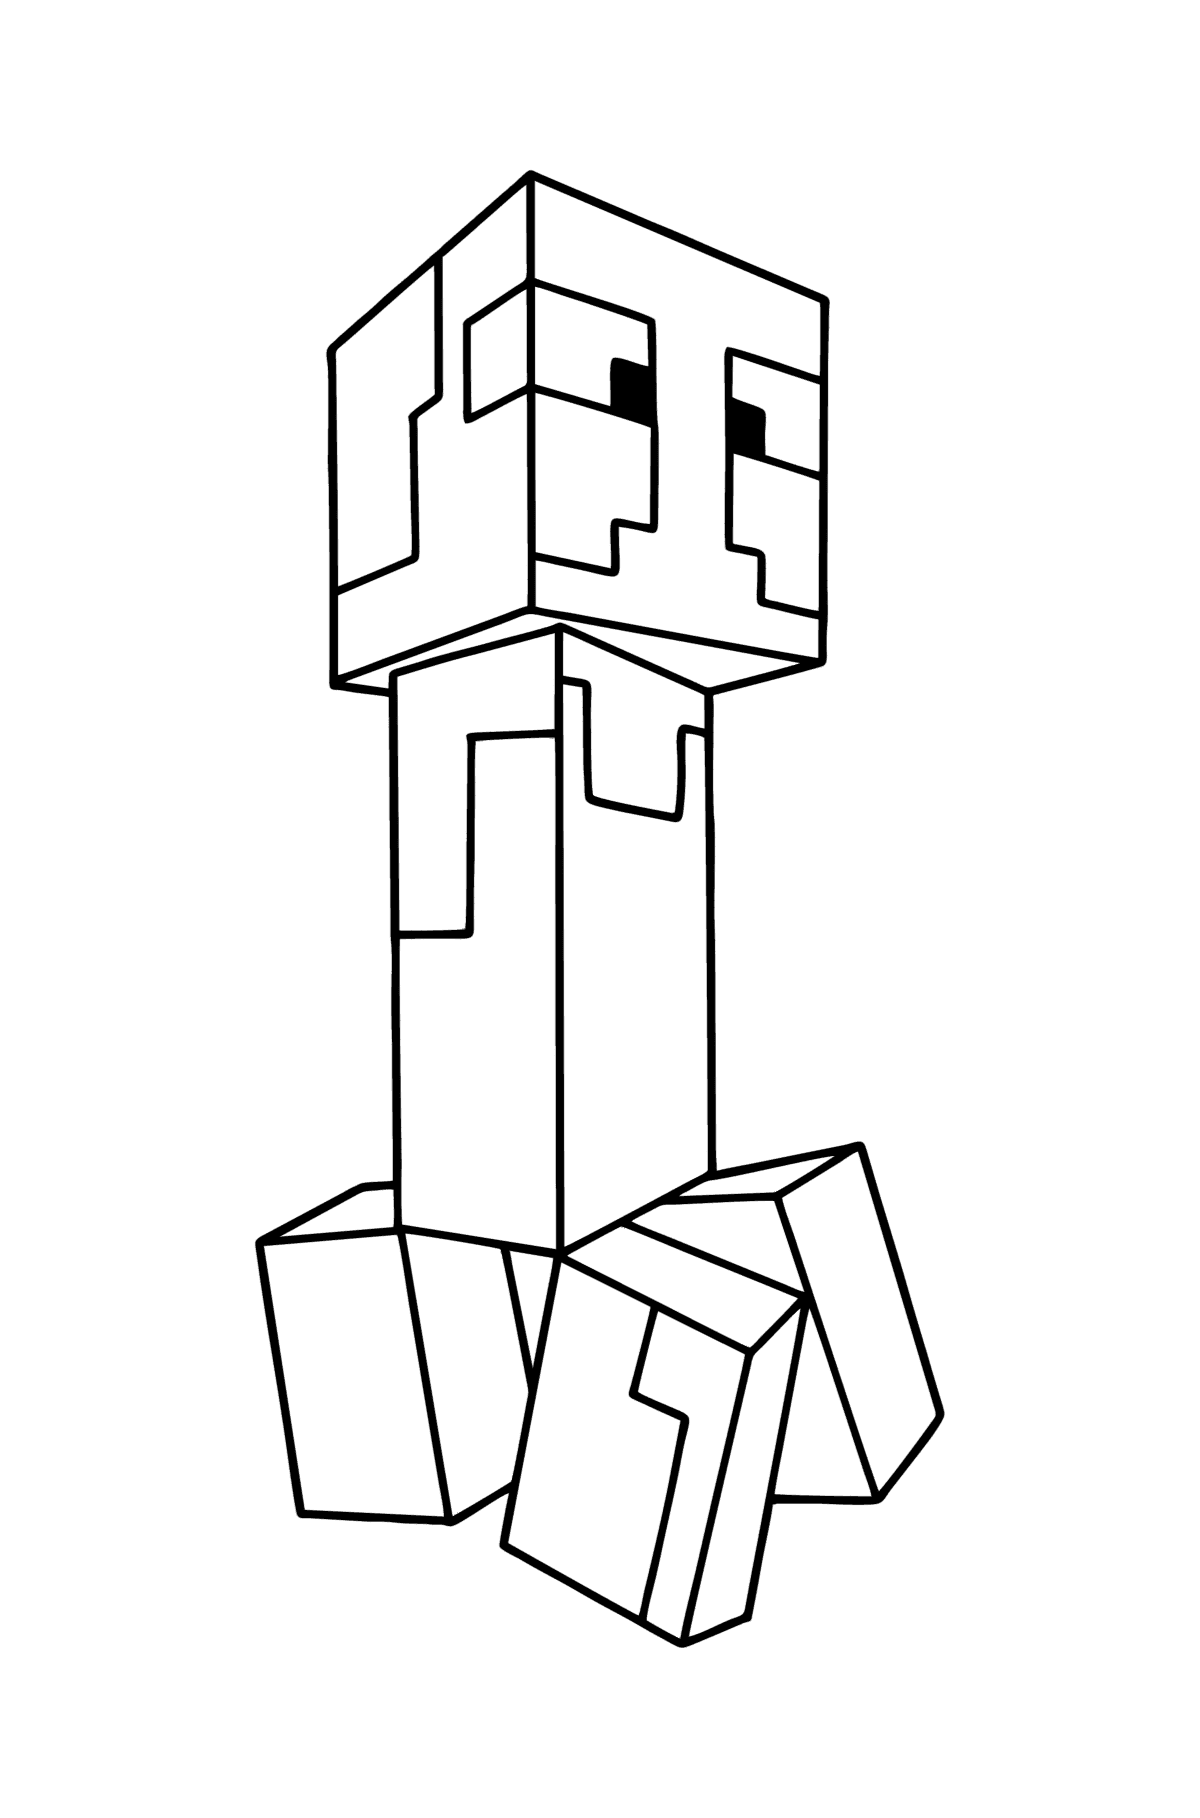 Desenho de Minecraft Creeper para colorir - Imagens para Colorir para Crianças